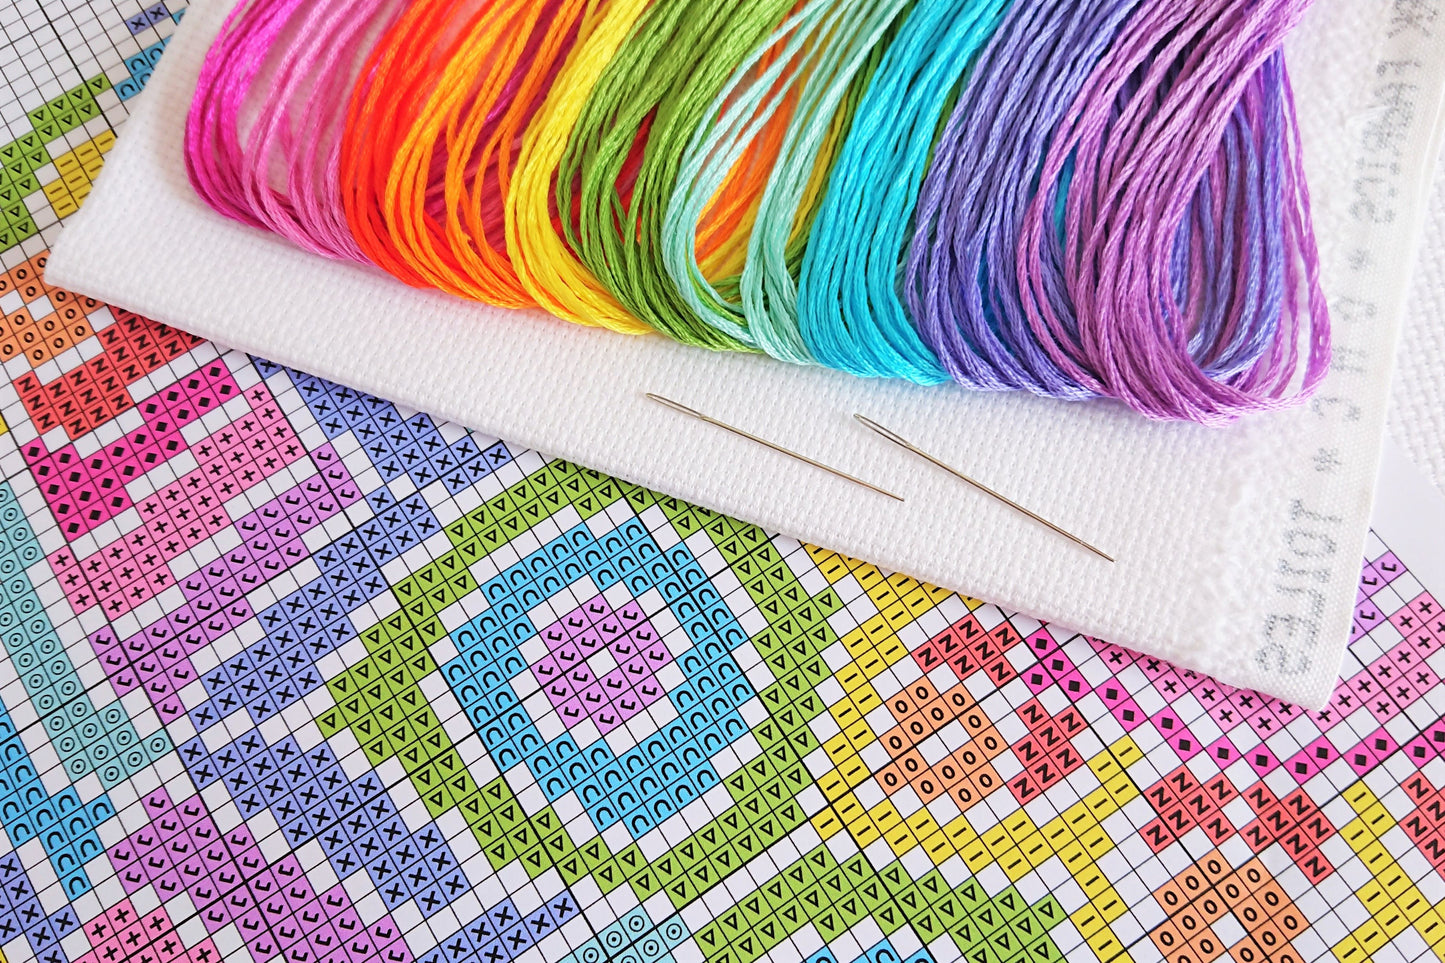 Rainbow Mandala (White Fabric) Cross Stitch Kit